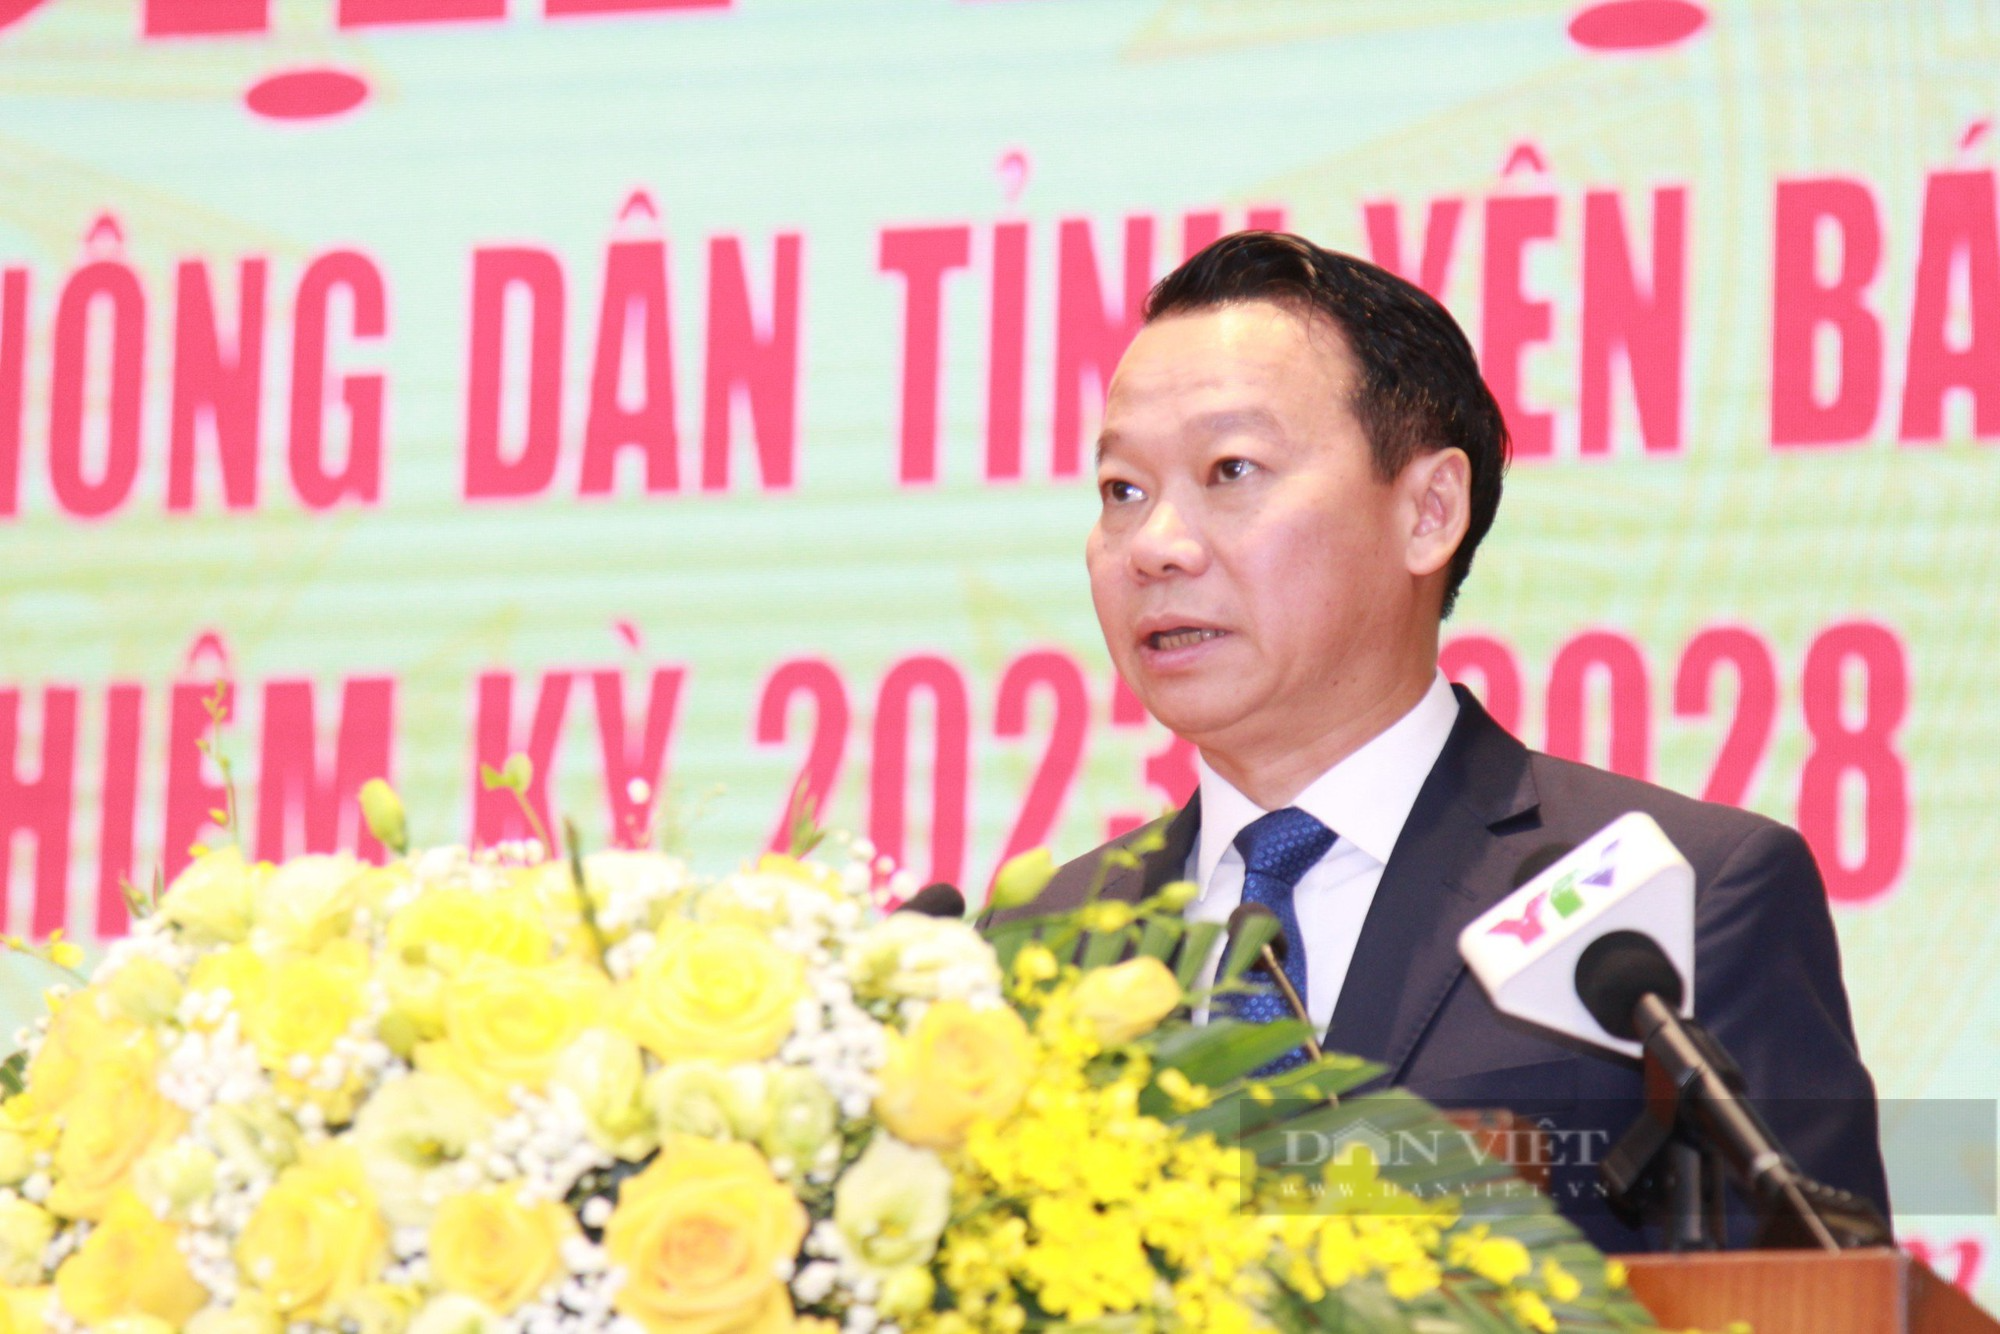 Phó Chủ tịch Hội NDVN Bùi Thị Thơm: Hội Nông dân tỉnh Yên Bái vận động hội viên phát huy bản sắc dân tộc - Ảnh 4.